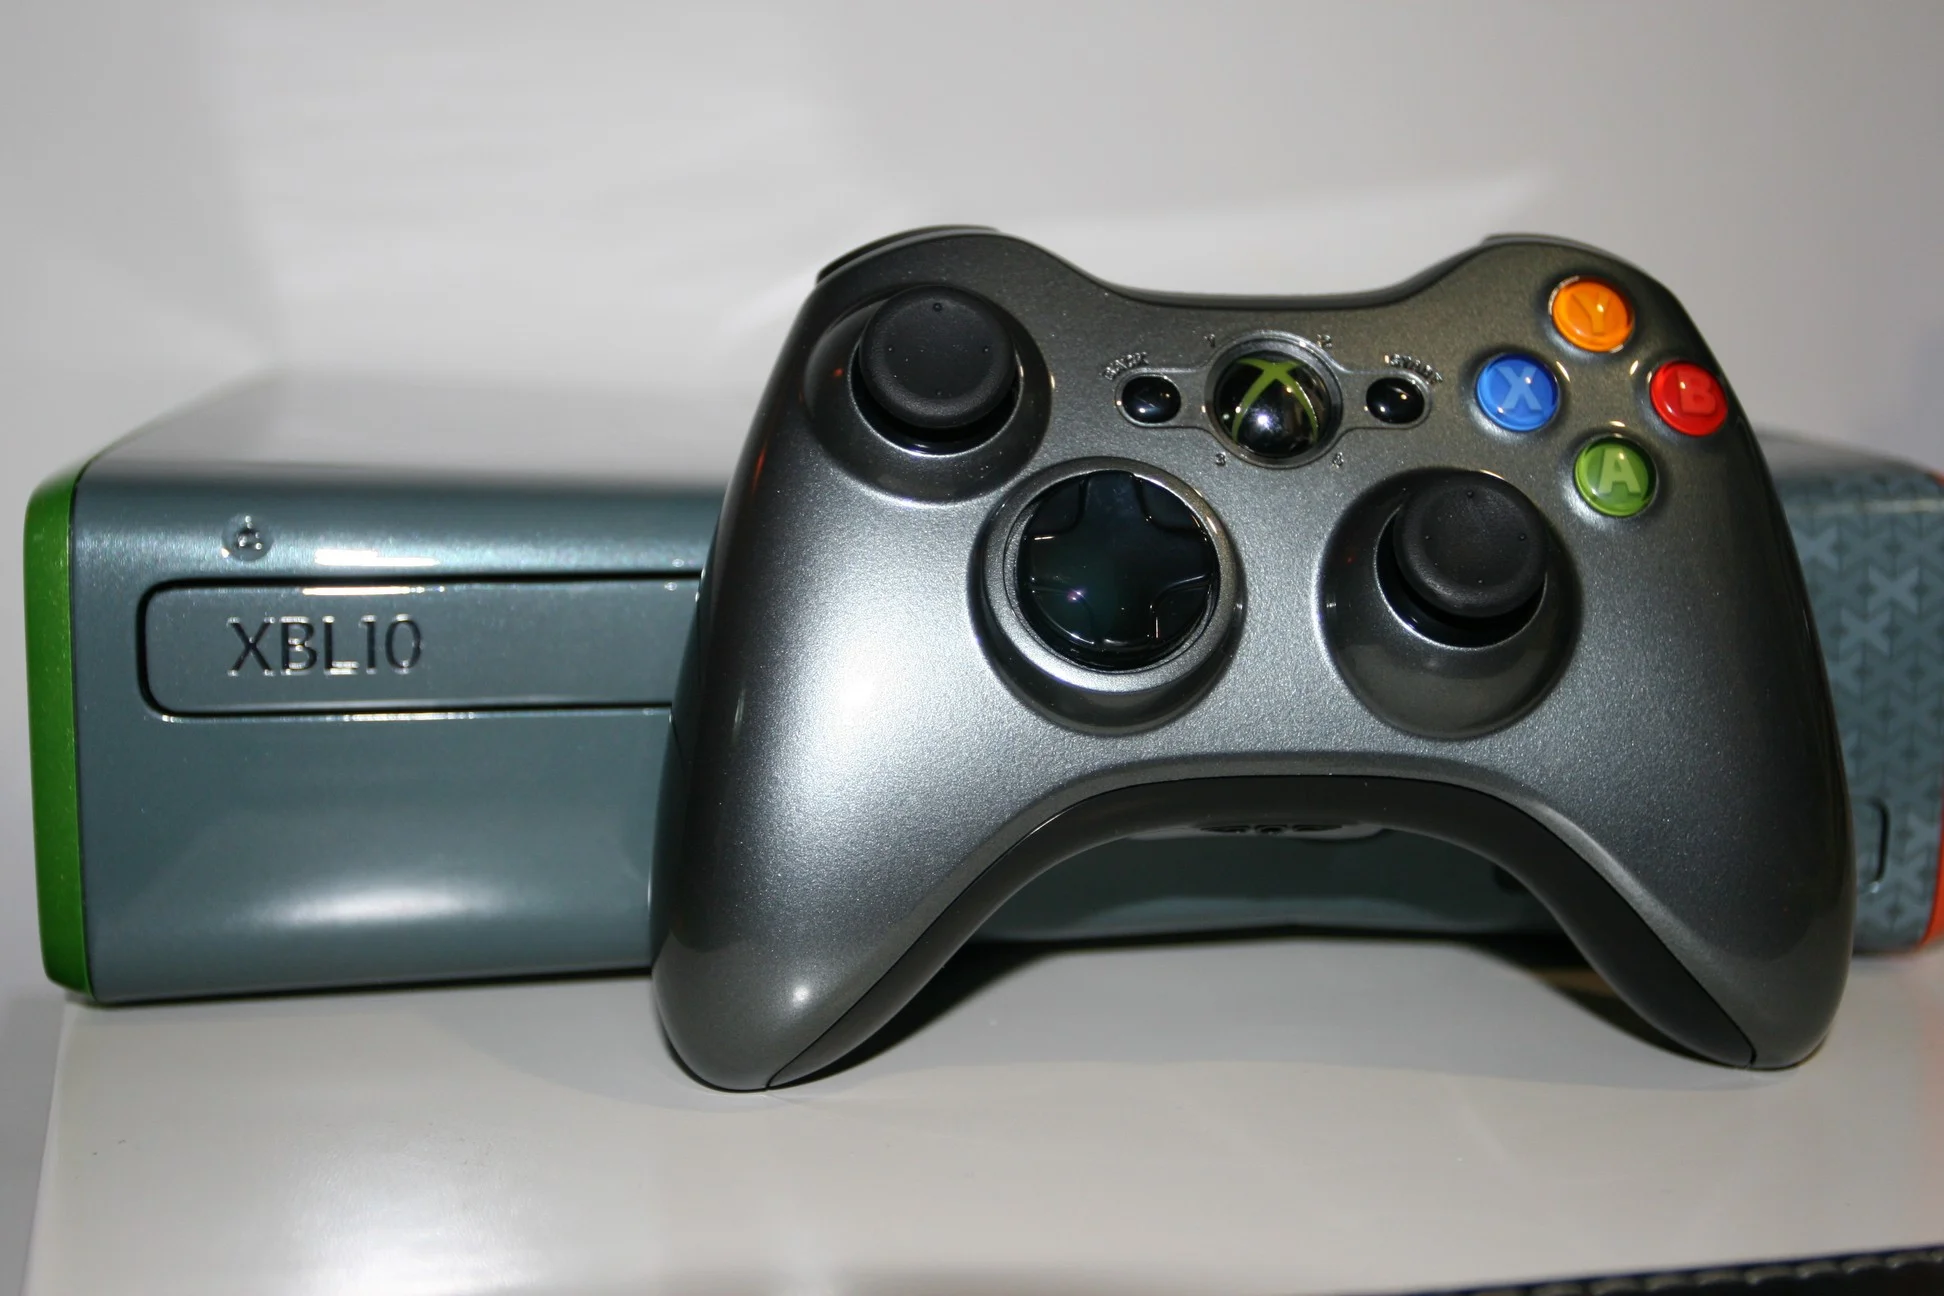  Microsoft Xbox 360 LIVE 10th Anniversary Controller